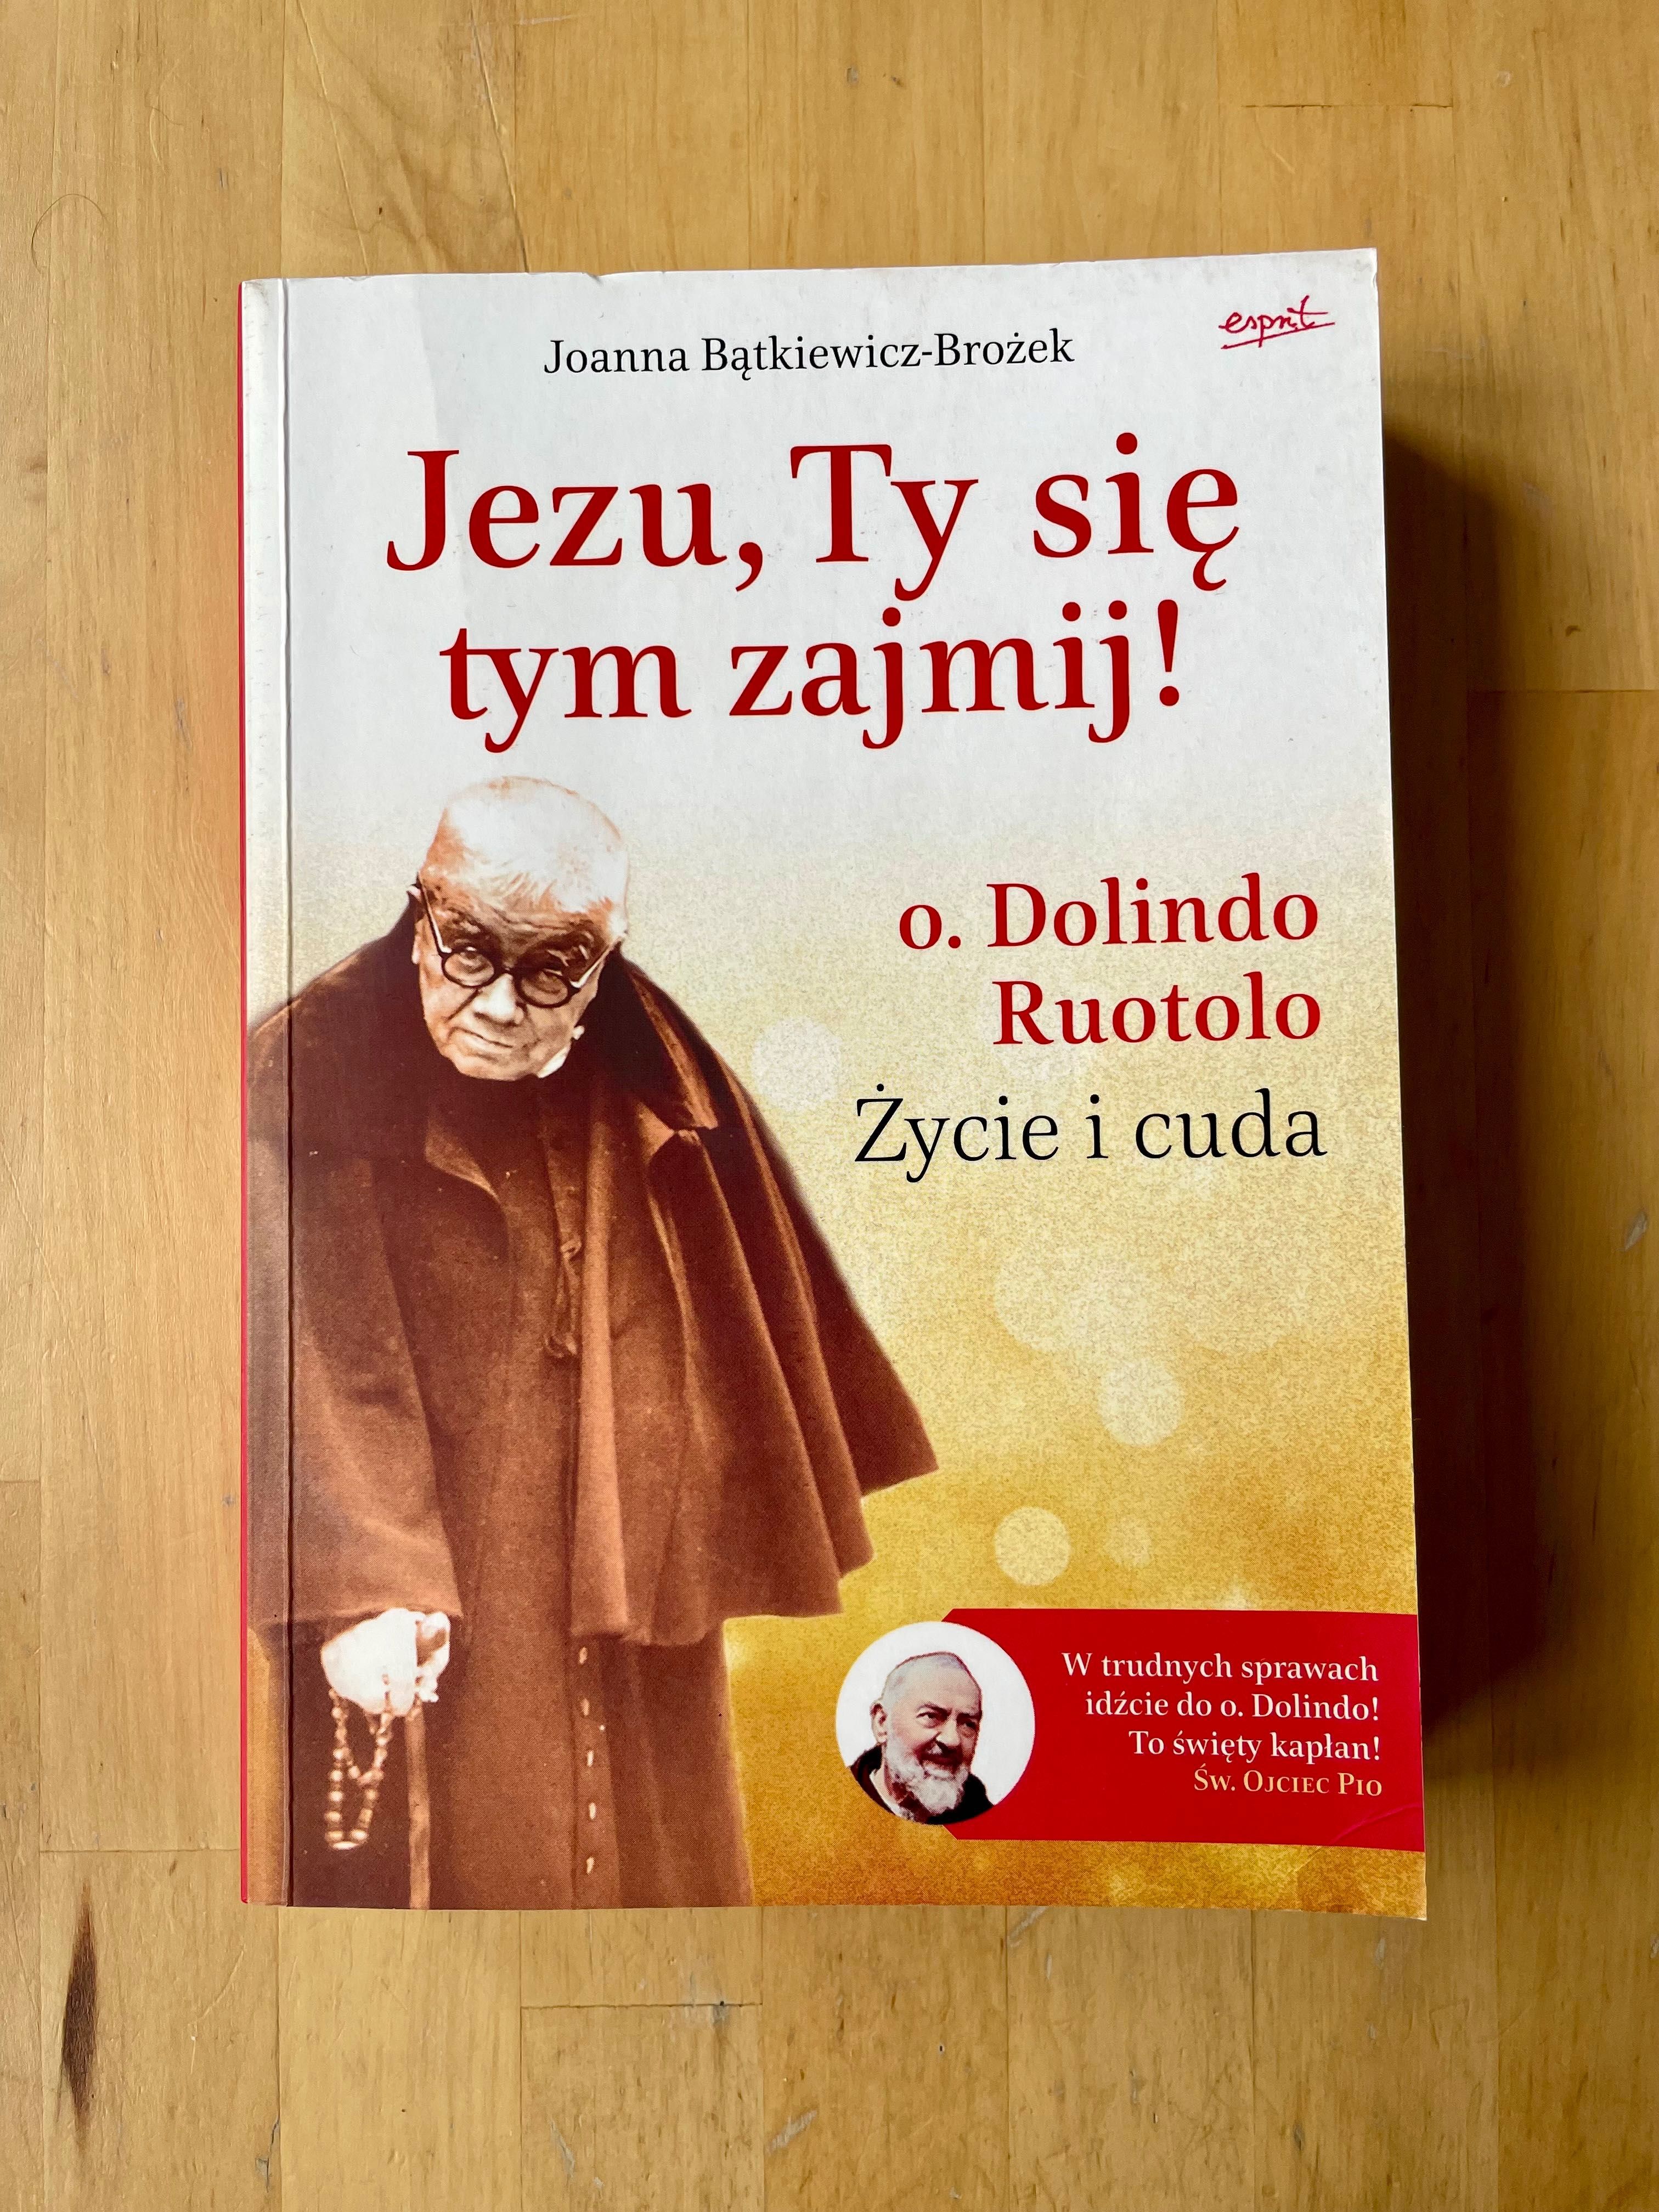 Joanna Bątkiewicz-Brożek „Jezu, Ty się tym zajmij! o. Dolindo Ruotolo”